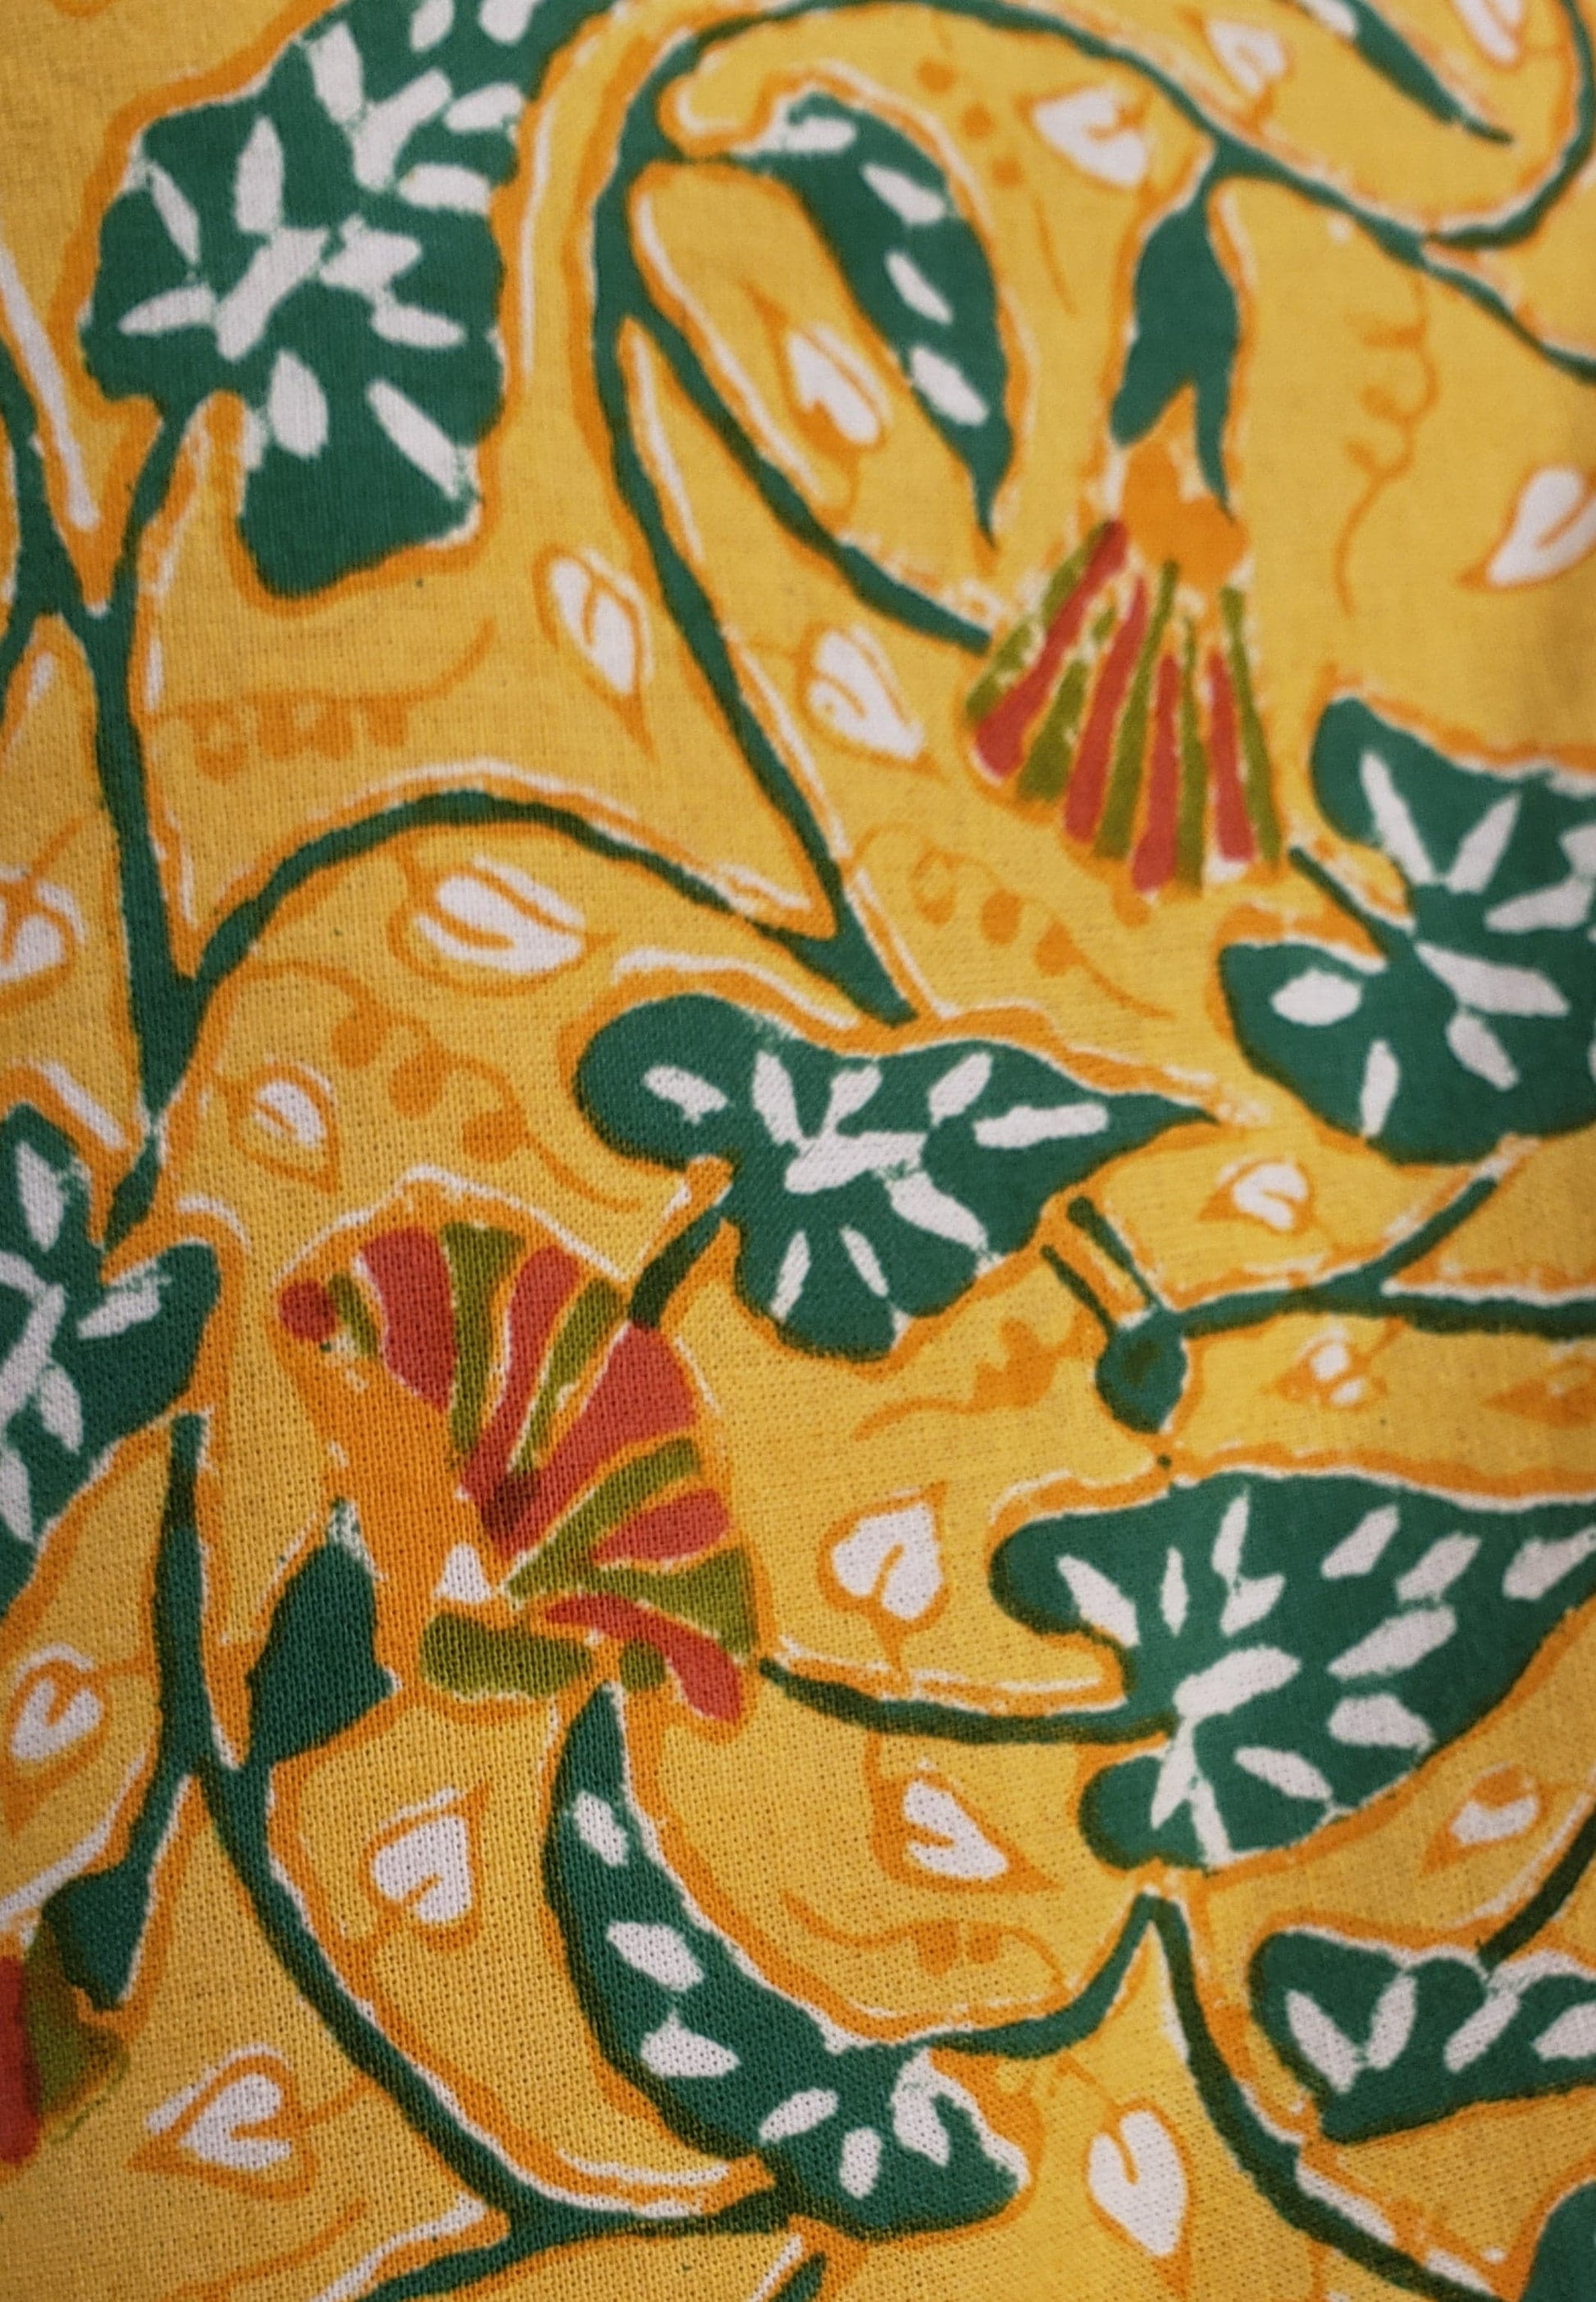 Detalle de estampado a mano, base amarilla con flores naranjas y tallos y hojas verdes.